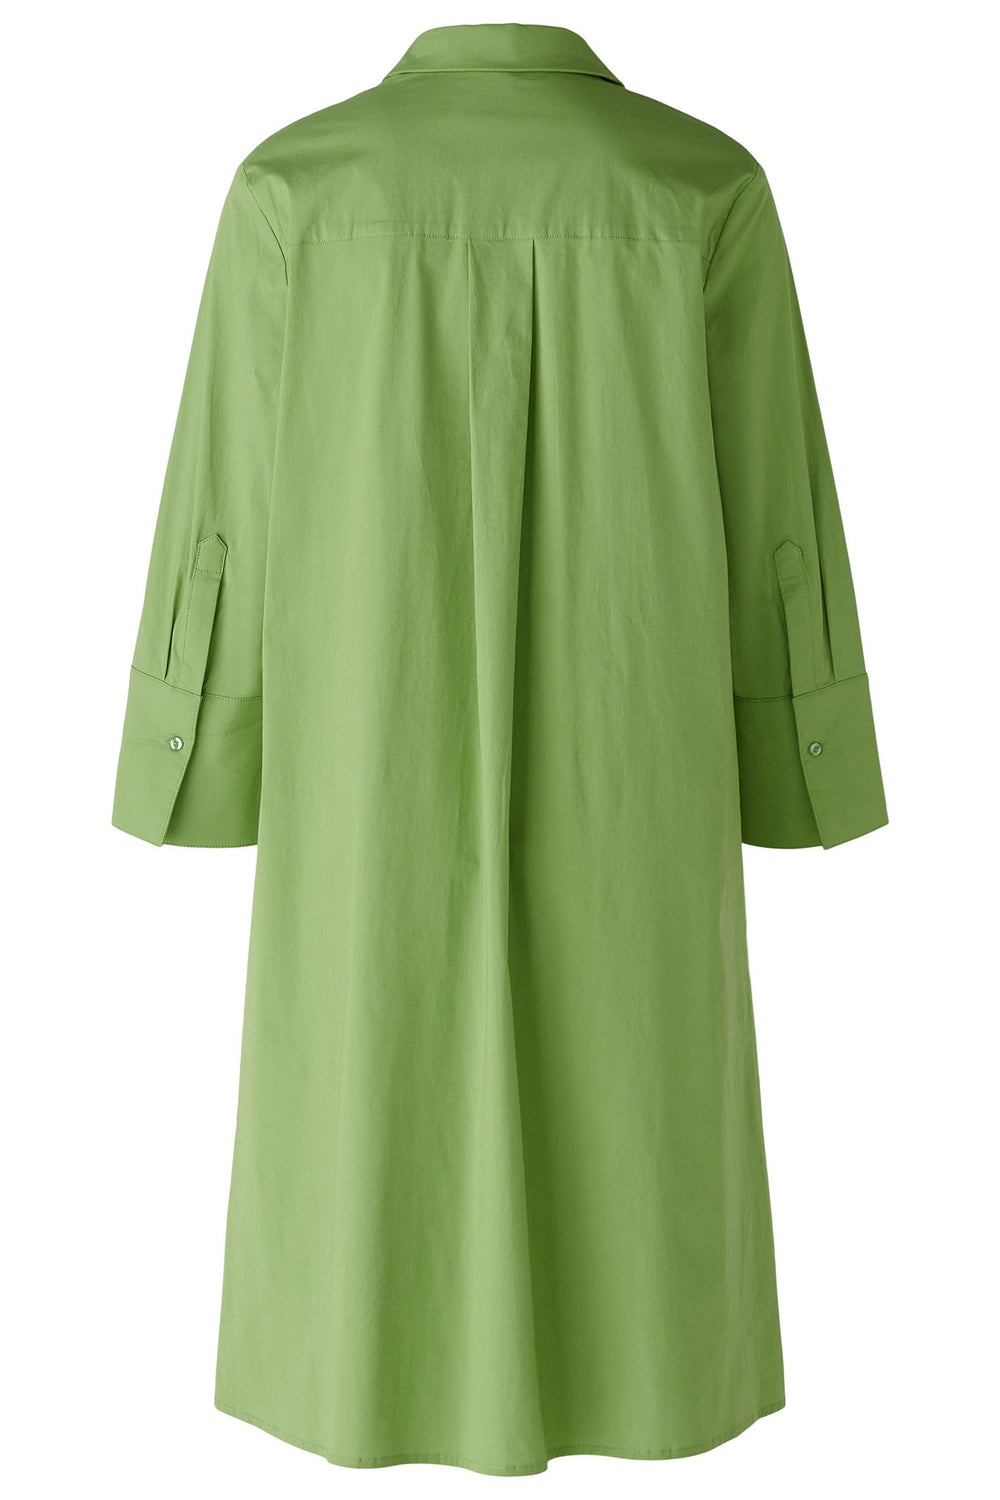 Oui 88465 Forest Green Wide Sleeve Shirt Dress - Olivia Grace Fashion